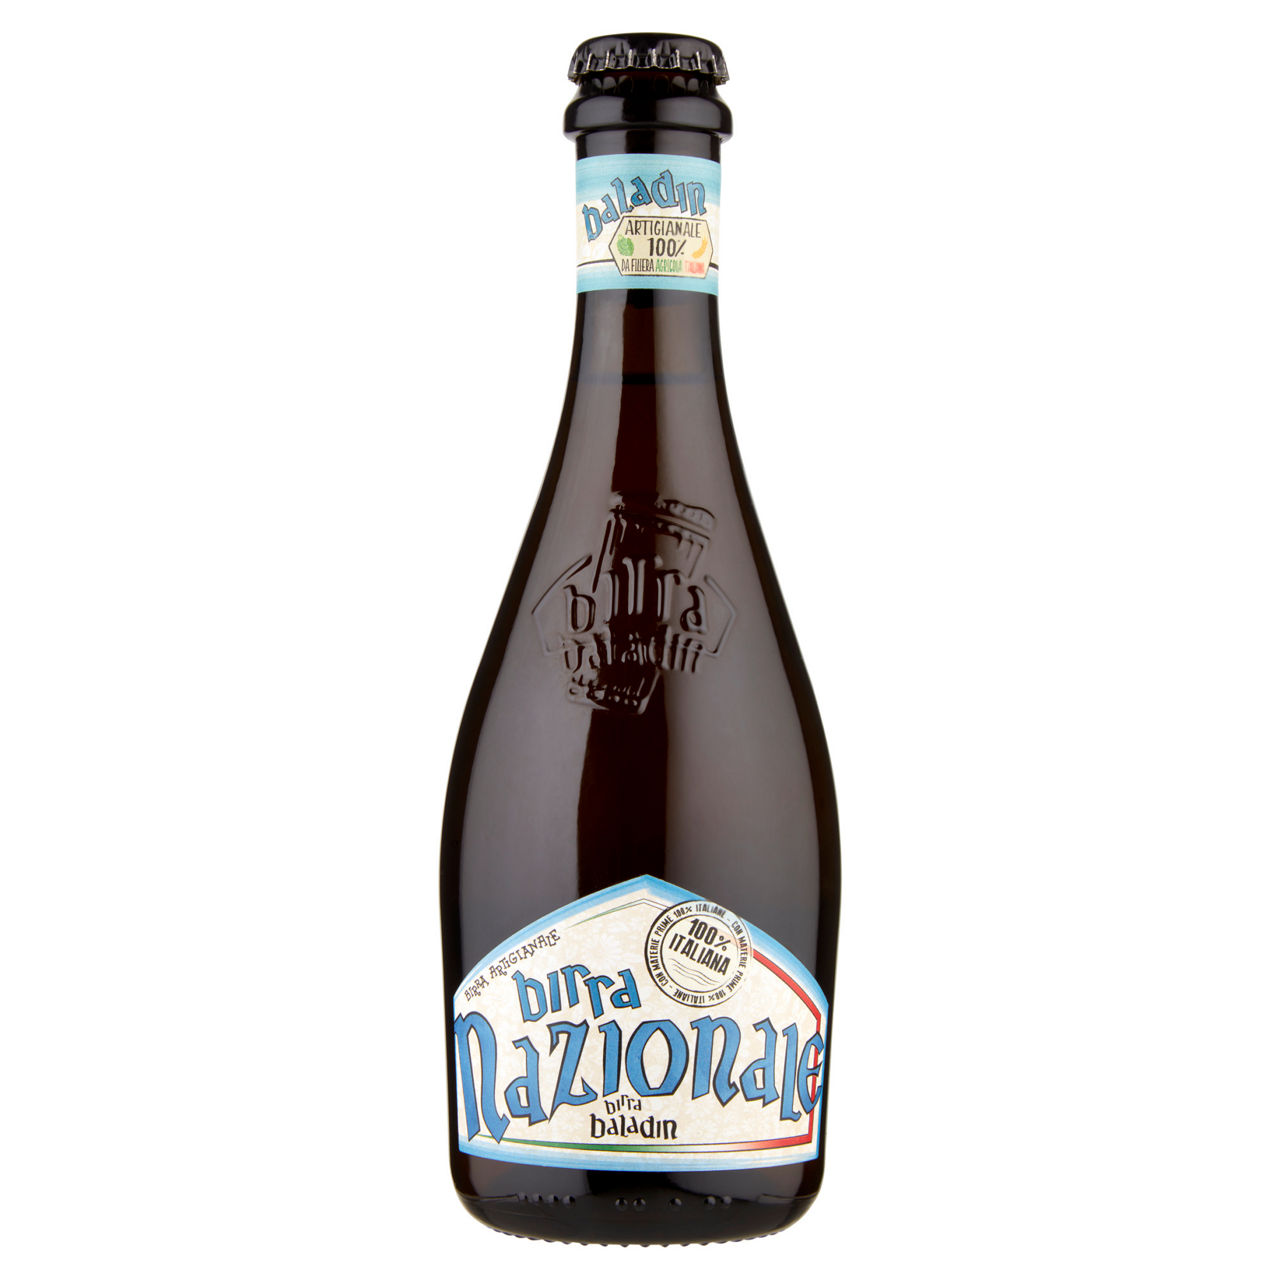 Birra 100% italiana 6,5 gradi baladin bottiglia ml 330